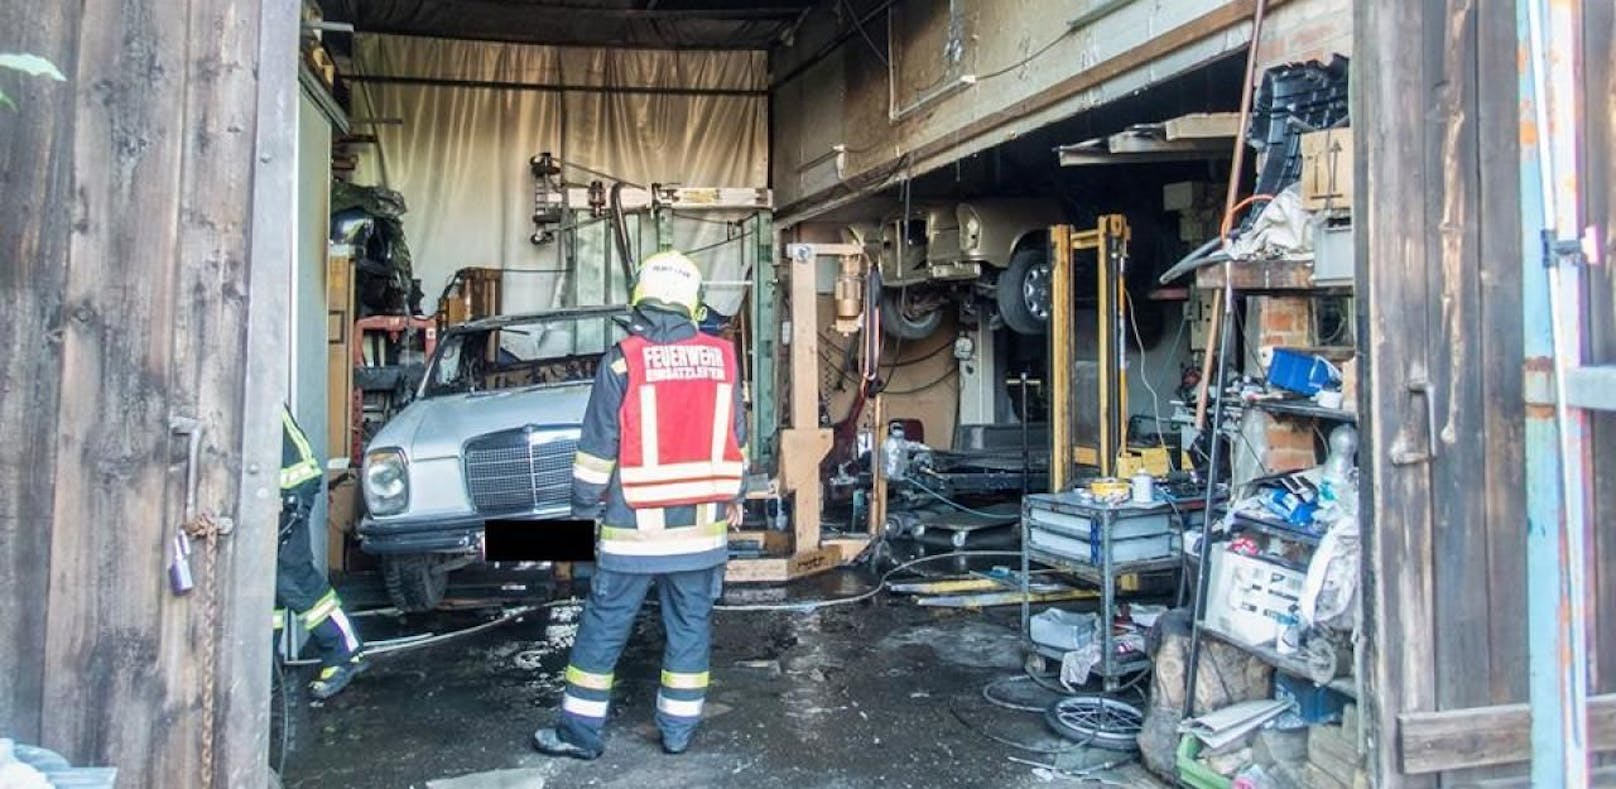 8 Feuerwehren bei Brand in Oldtimer-Werkstatt